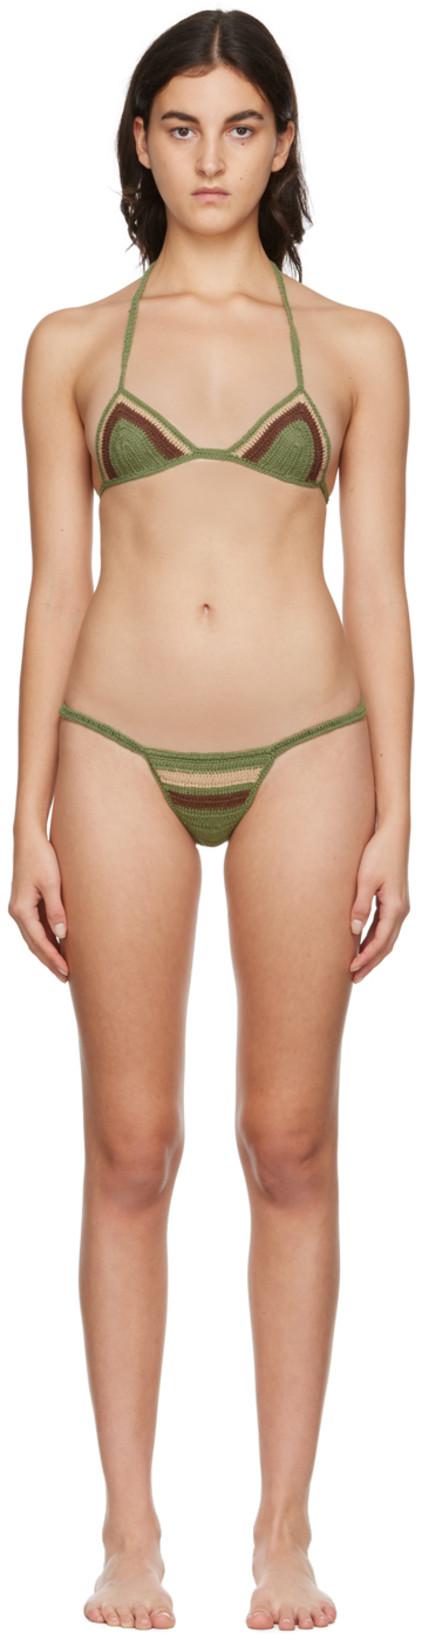 SSENSE Exclusive Green & Brown Algarve Bikini by AKOIA SWIM